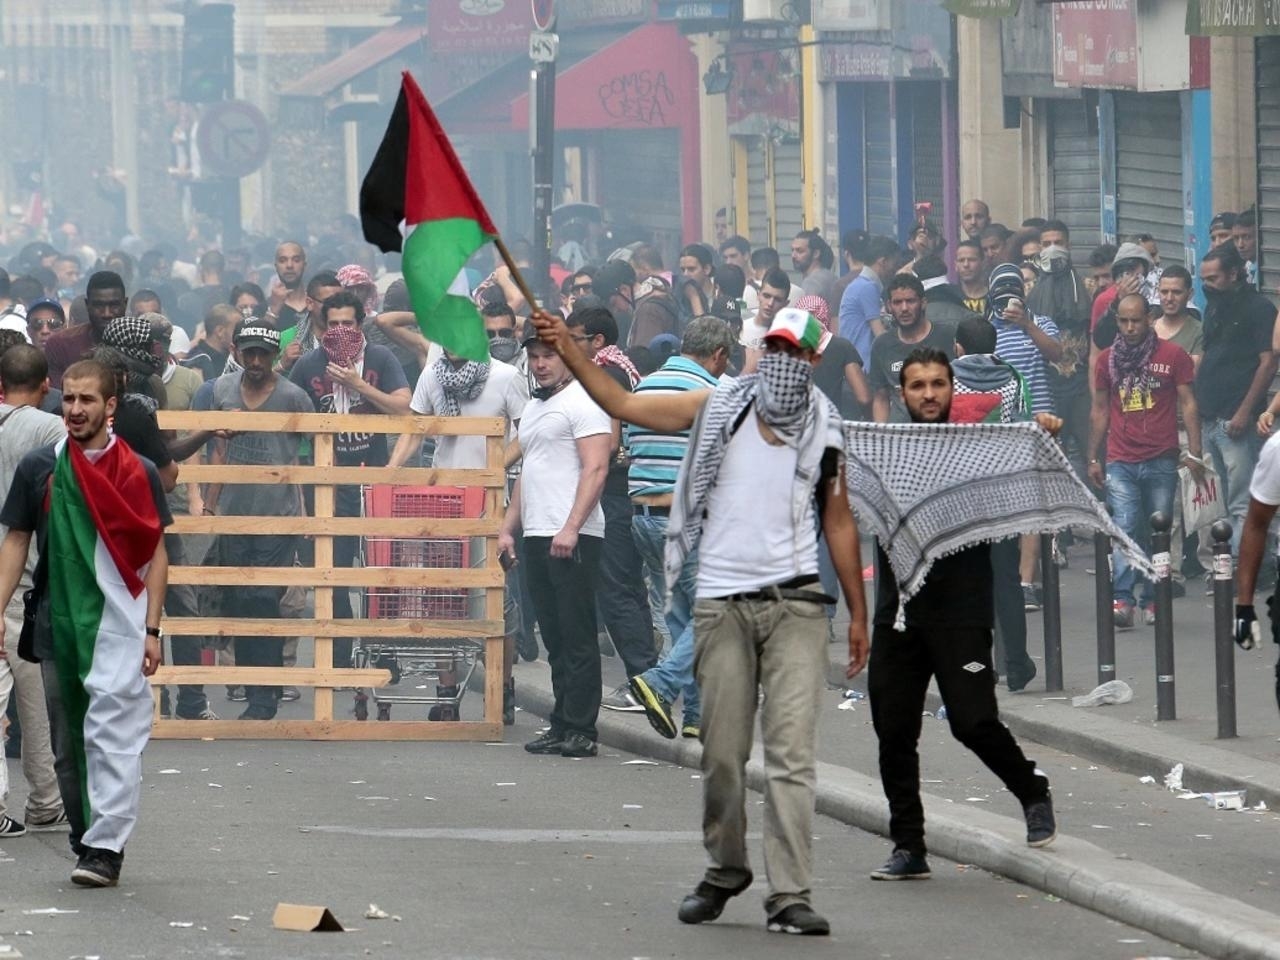 Tensions au rassemblement pro-palestinien interdit à Paris